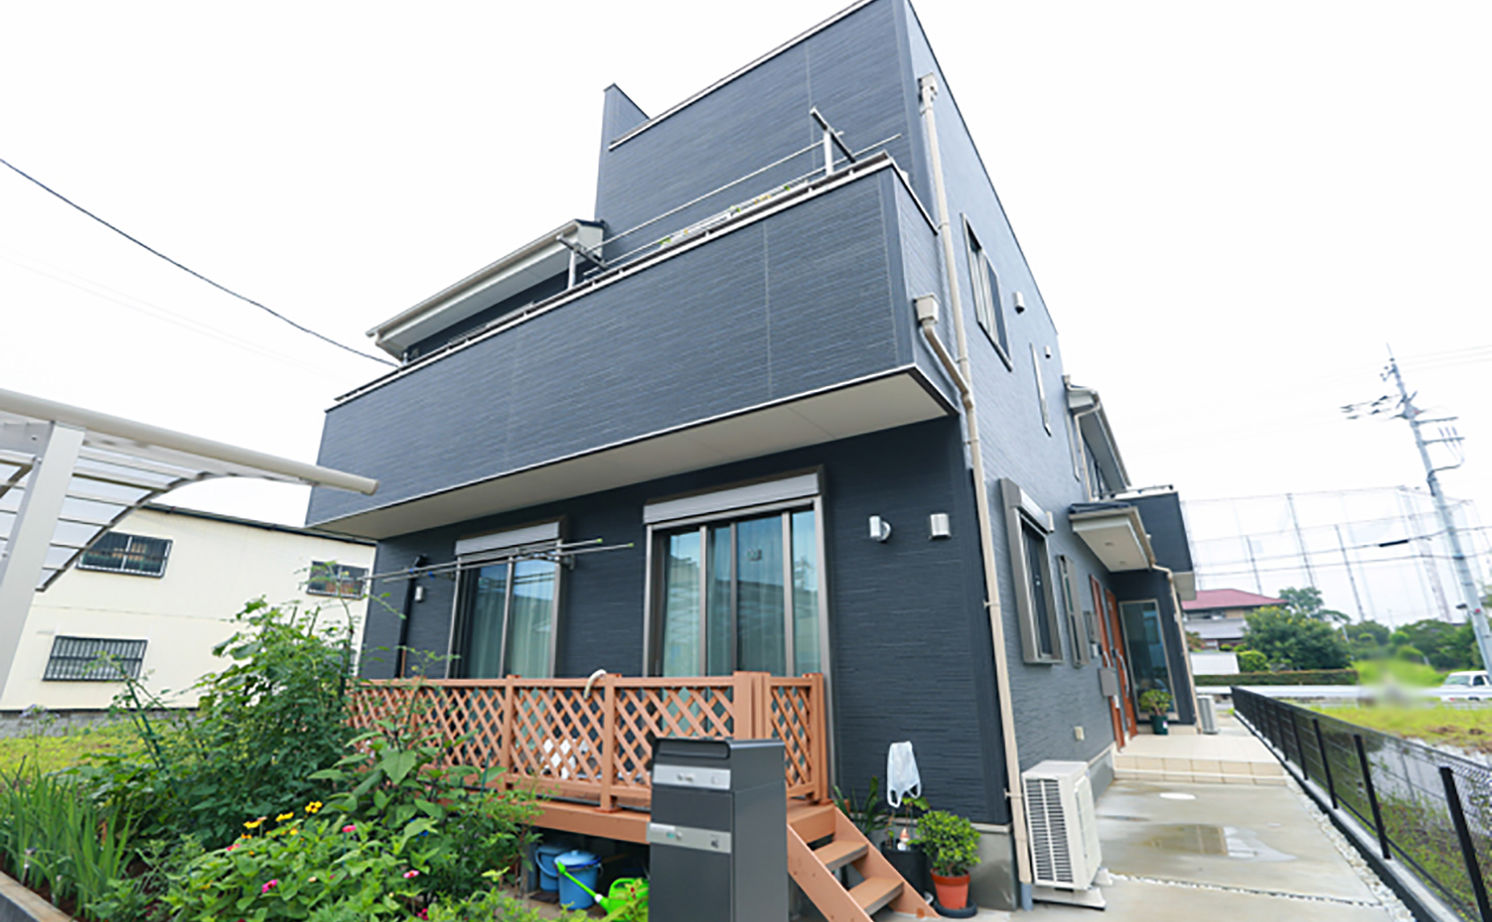 Suumo 家族みんなが気軽に集まり過ごせる 完全分離の三世帯住宅で叶える理想のライフスタイル アイダ設計 の建築実例詳細 注文住宅